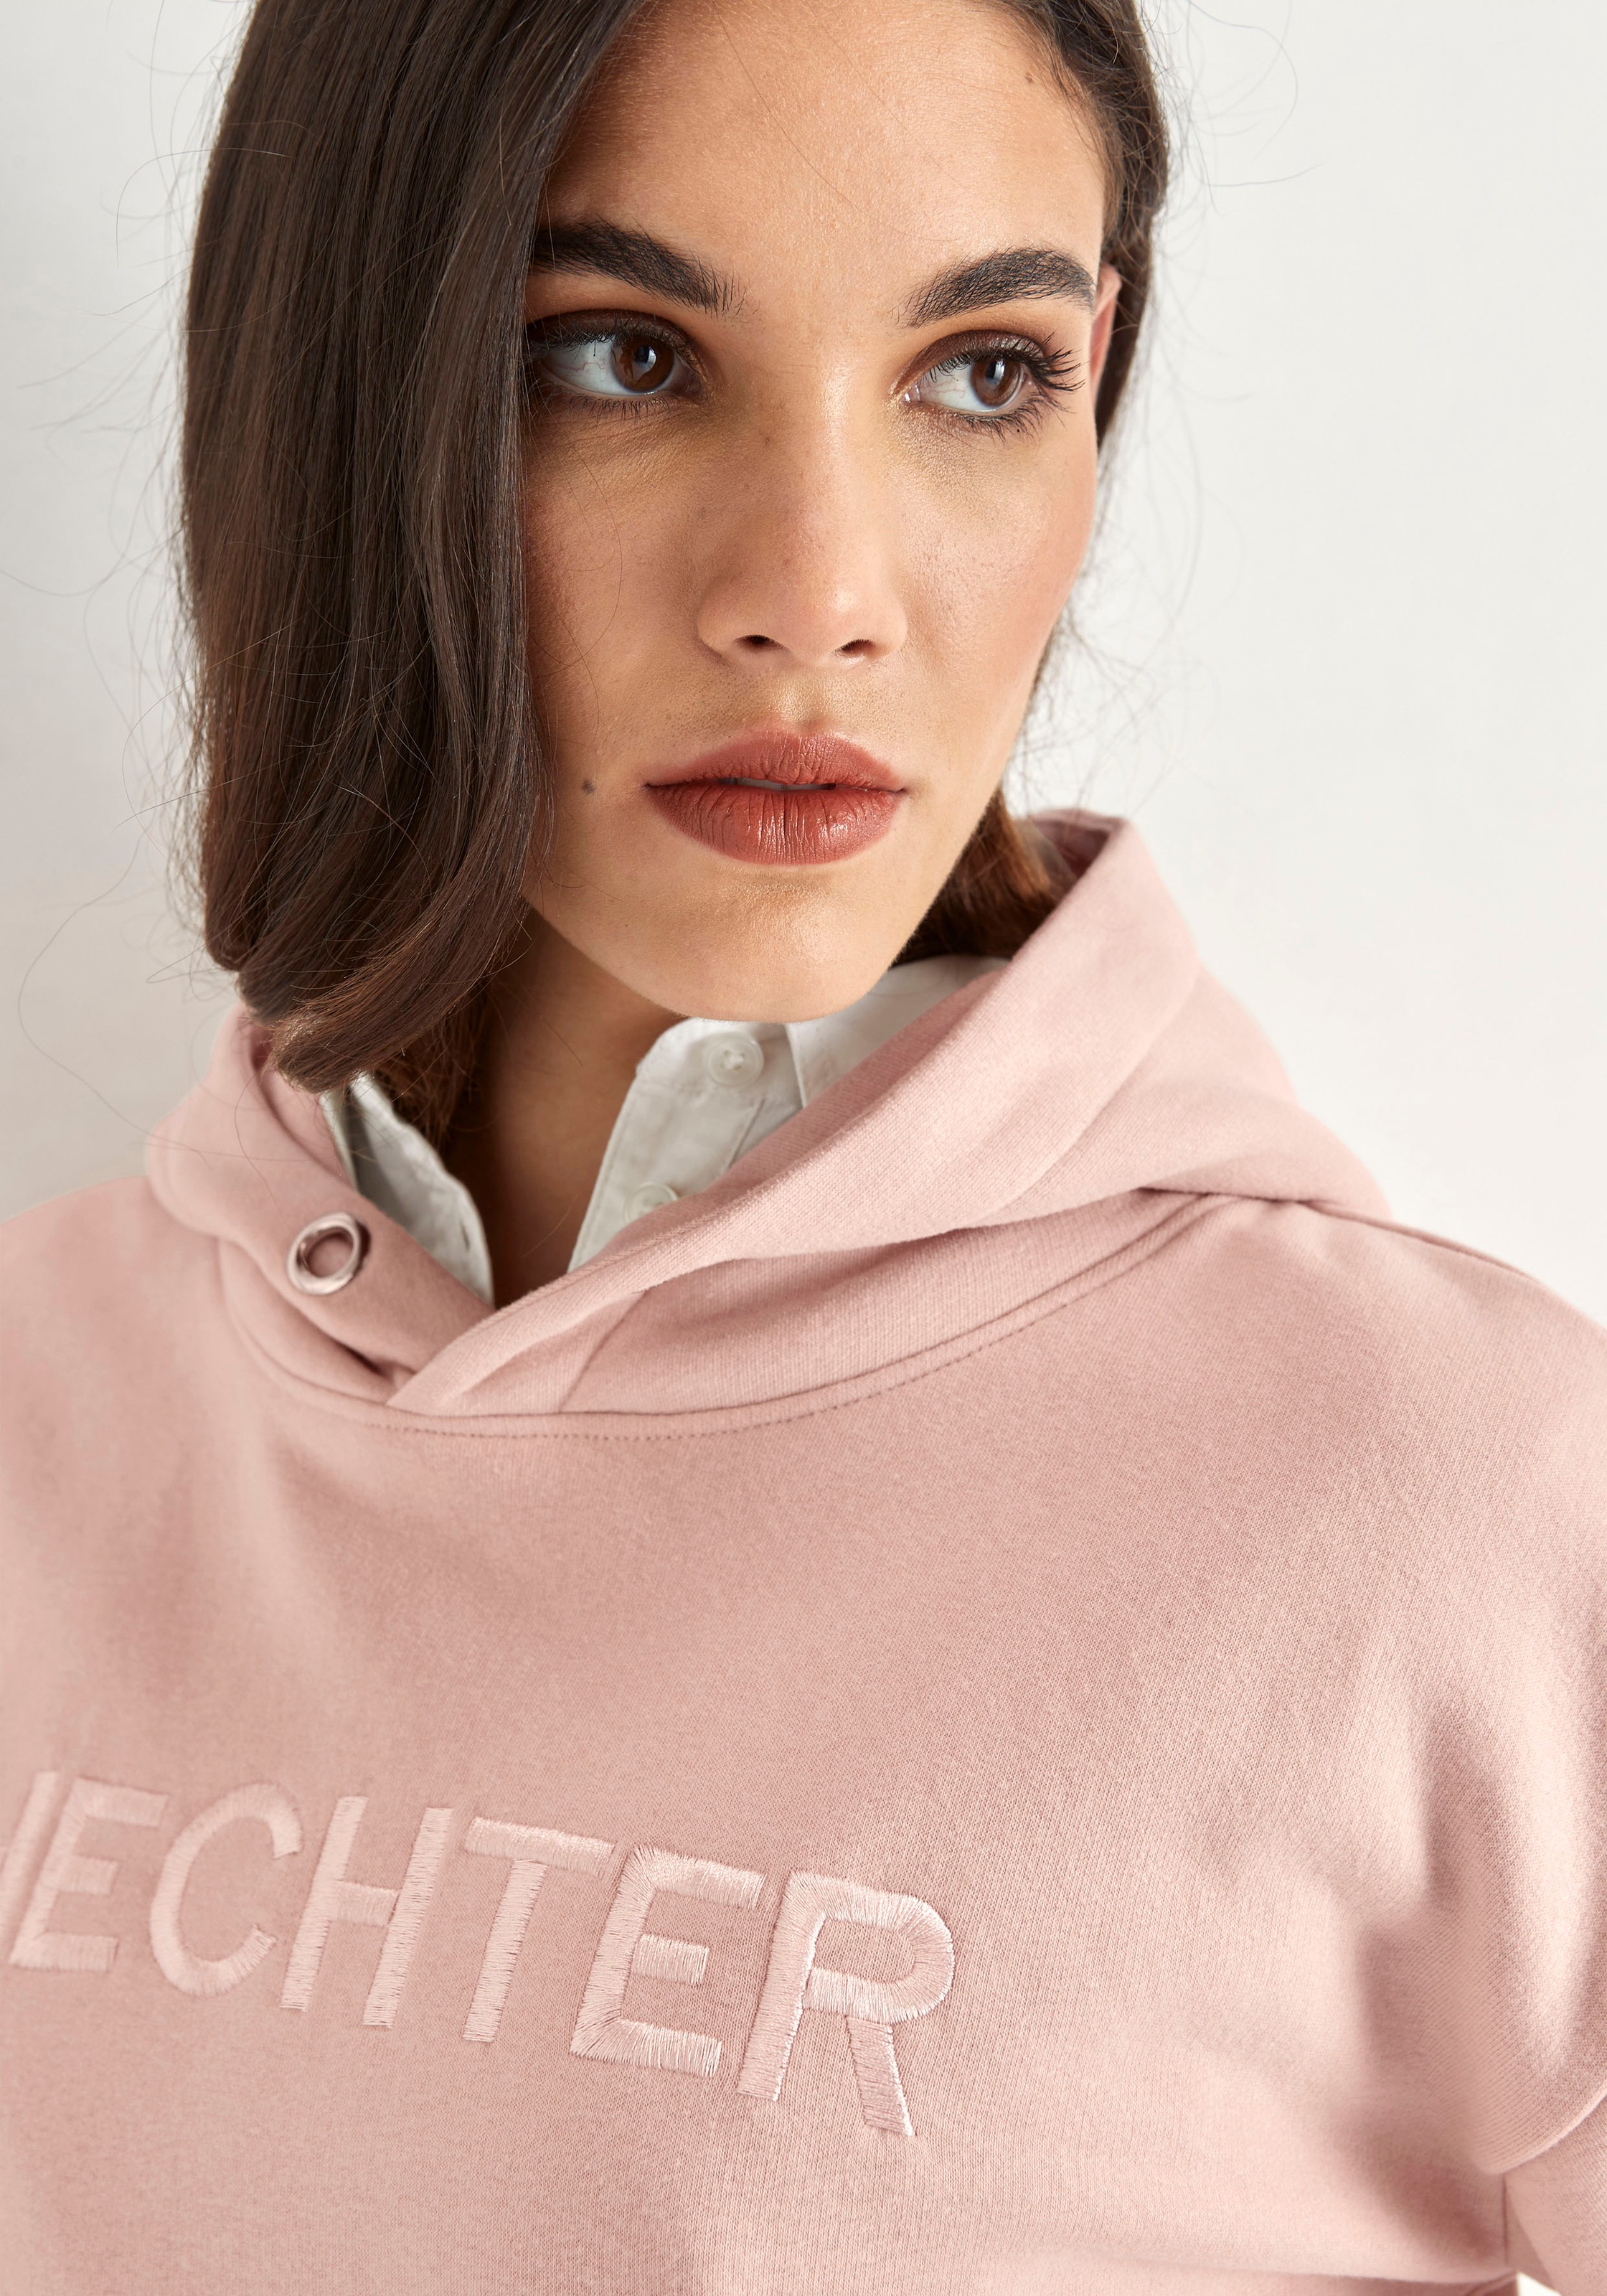 HECHTER PARIS Kapuzensweatshirt, mit Markenstickerei kaufen bei OTTO